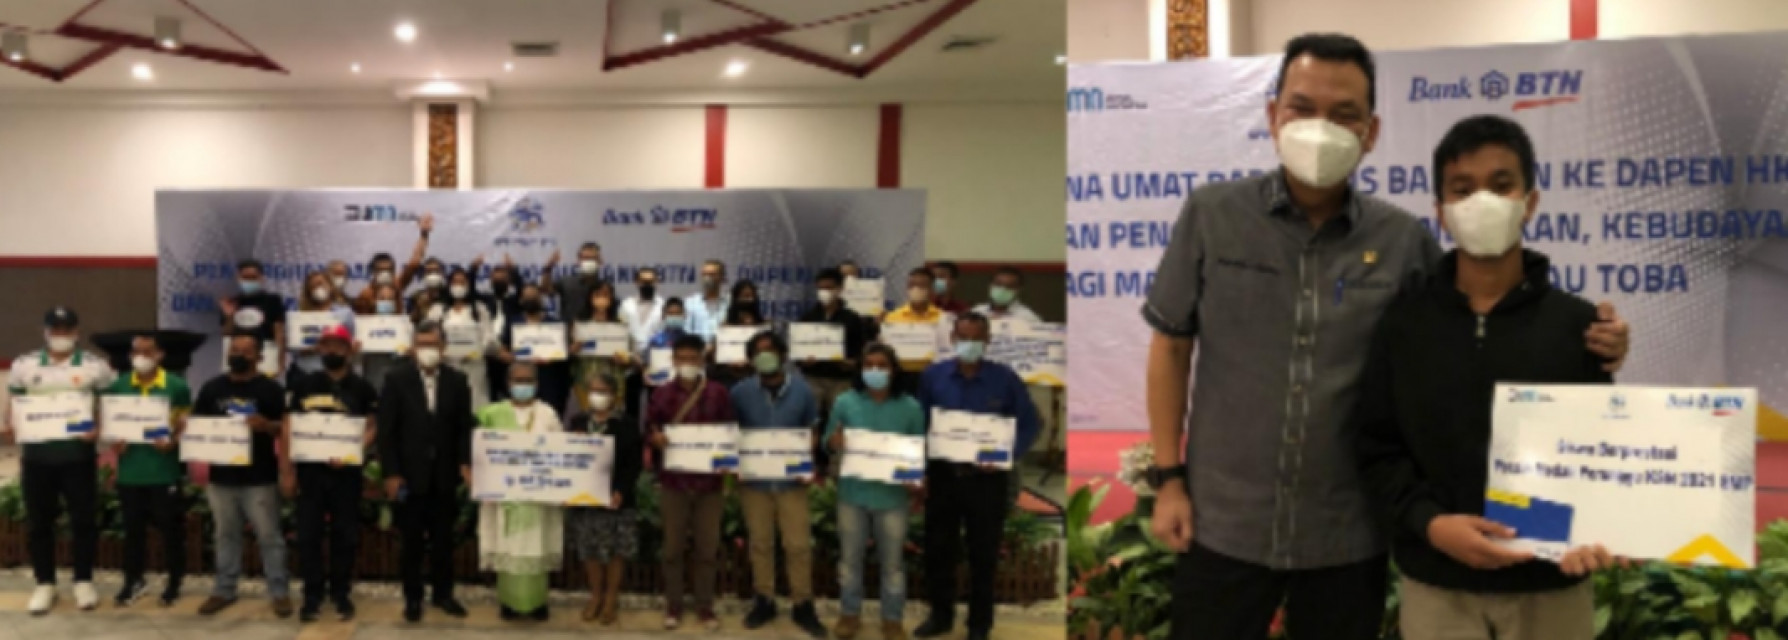 Aspirasi Martin Manurung Dorong BTN Bantu HKBP dan Masyarakat Berpestasi di Danau Toba dengan Memberikan Bantuan Dana Pensiun dan Pembinaan Prestasi